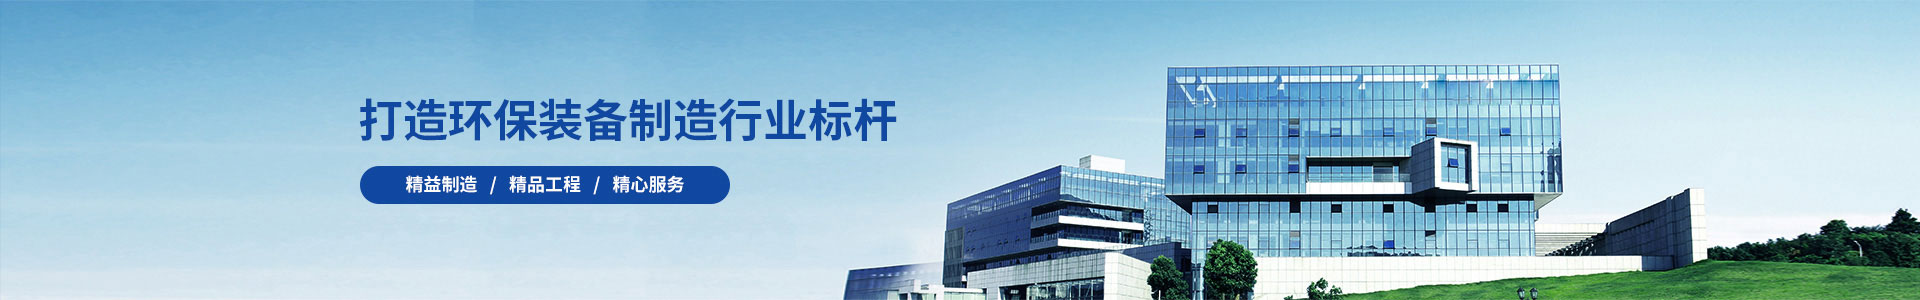 产品中心标题八-土壤修复成套-广州锦如广告有限公司